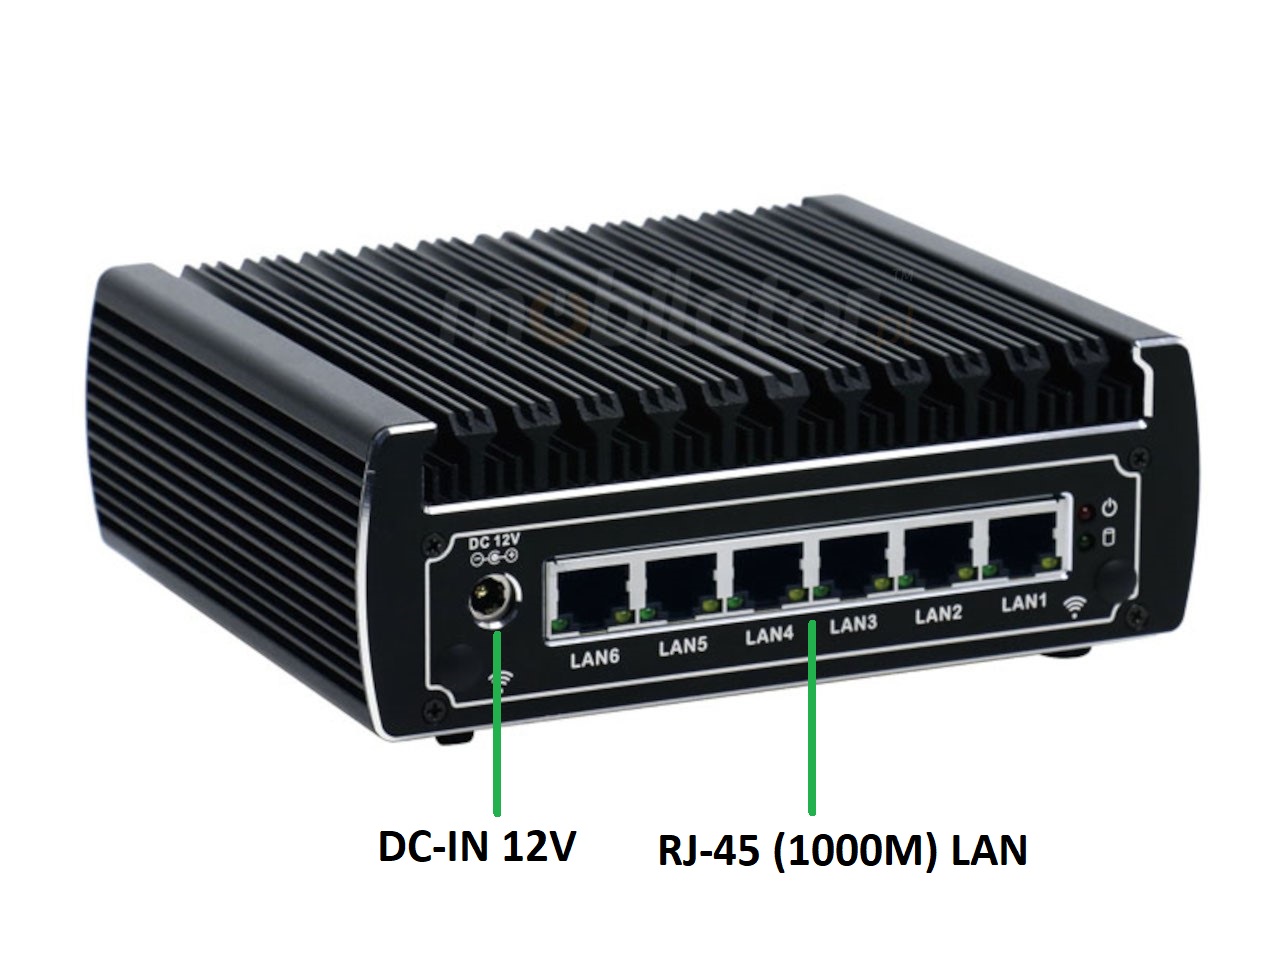  IBOX N133 v.2, zcza ty, SSD, DDR4, przemysowy, may, szybki, niezawodny, fanless, industrial, small, LAN, INTEL i3